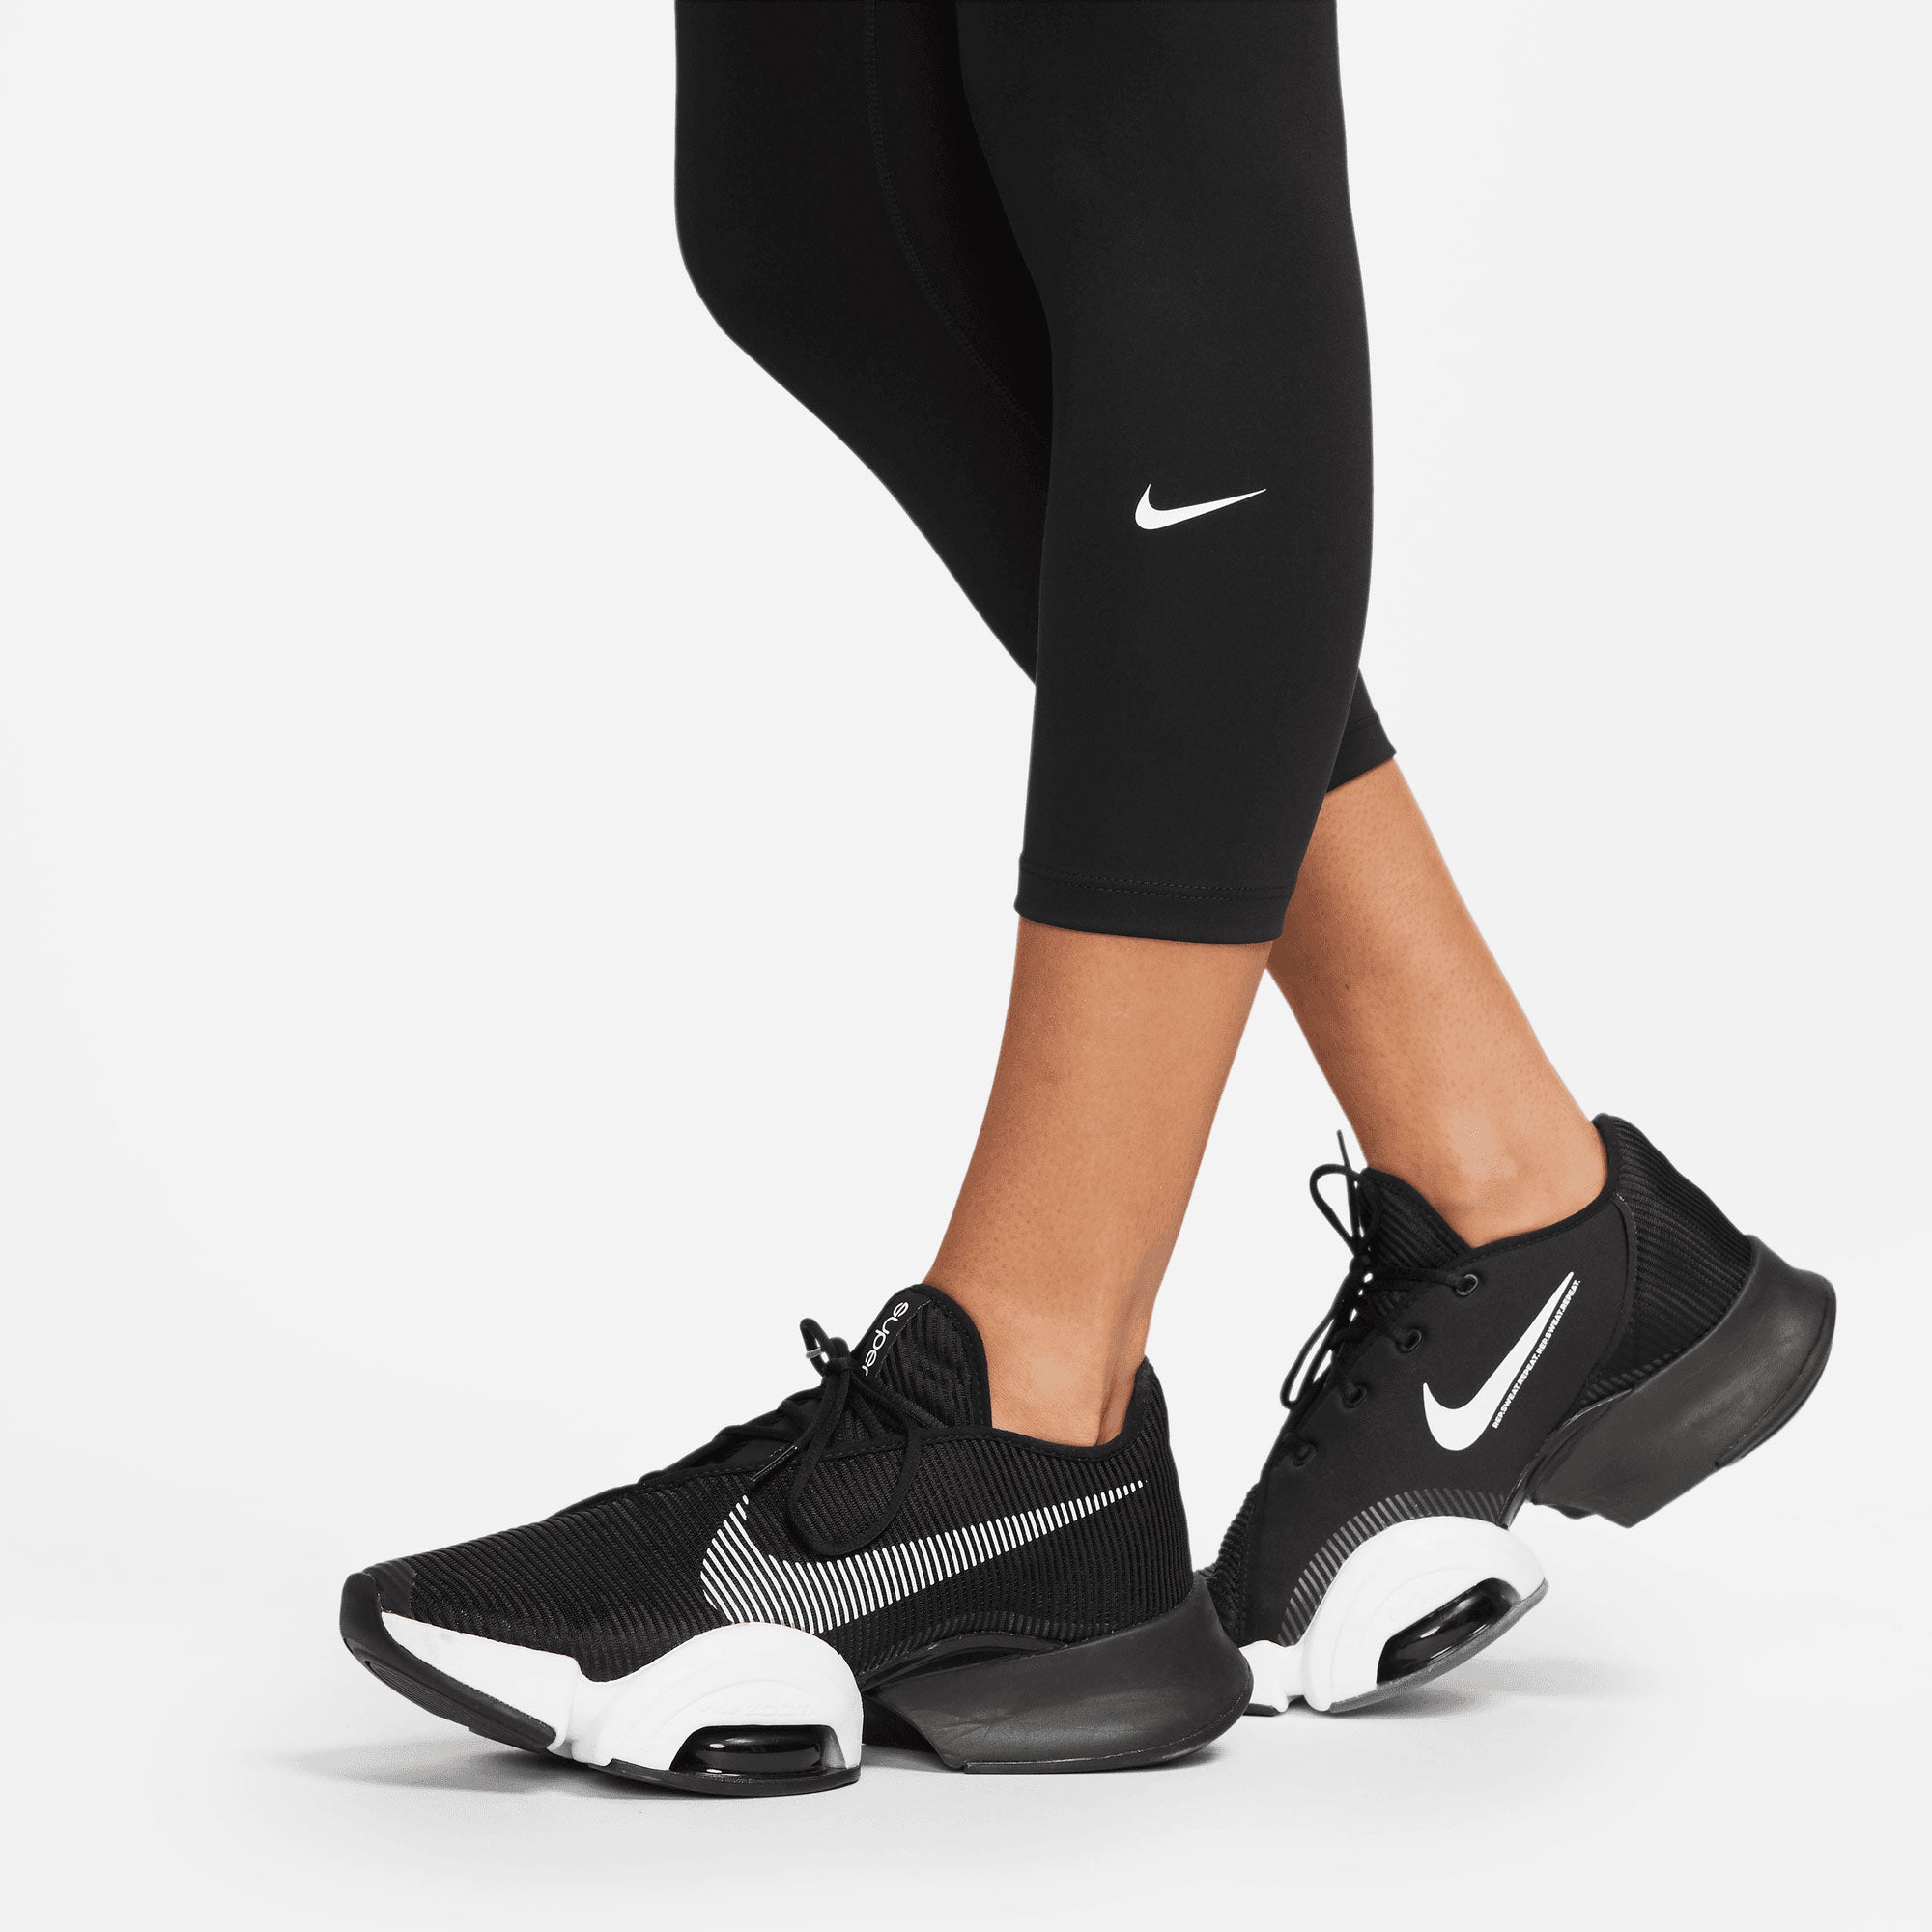 Women's Nike Dri-FIT Go High Rise Tight - Black/Black